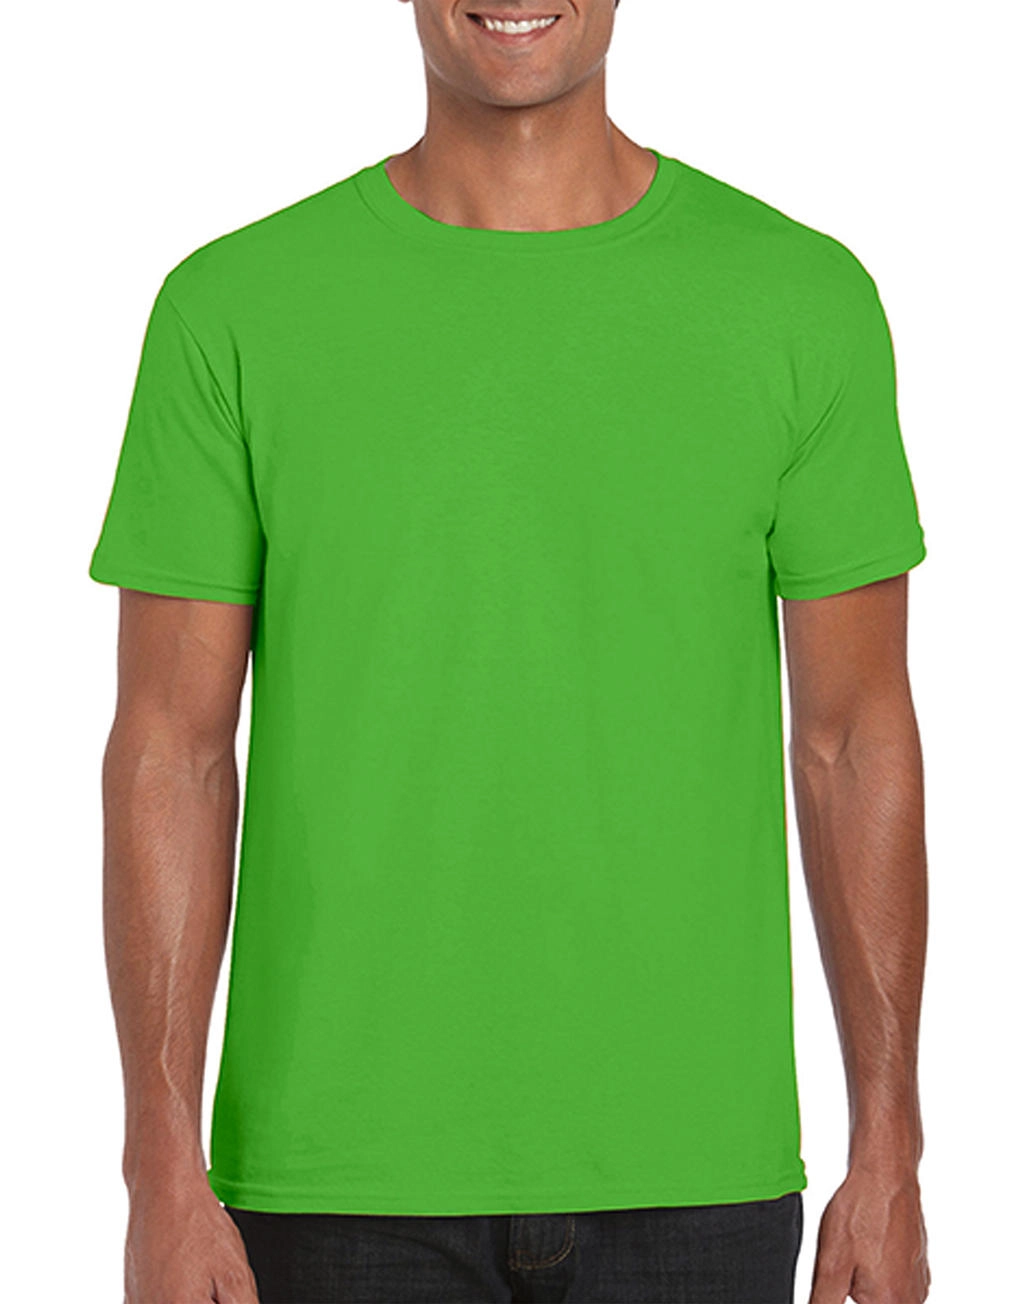 Softstyle® Ring Spun T-Shirt zum Besticken und Bedrucken in der Farbe Electric Green mit Ihren Logo, Schriftzug oder Motiv.